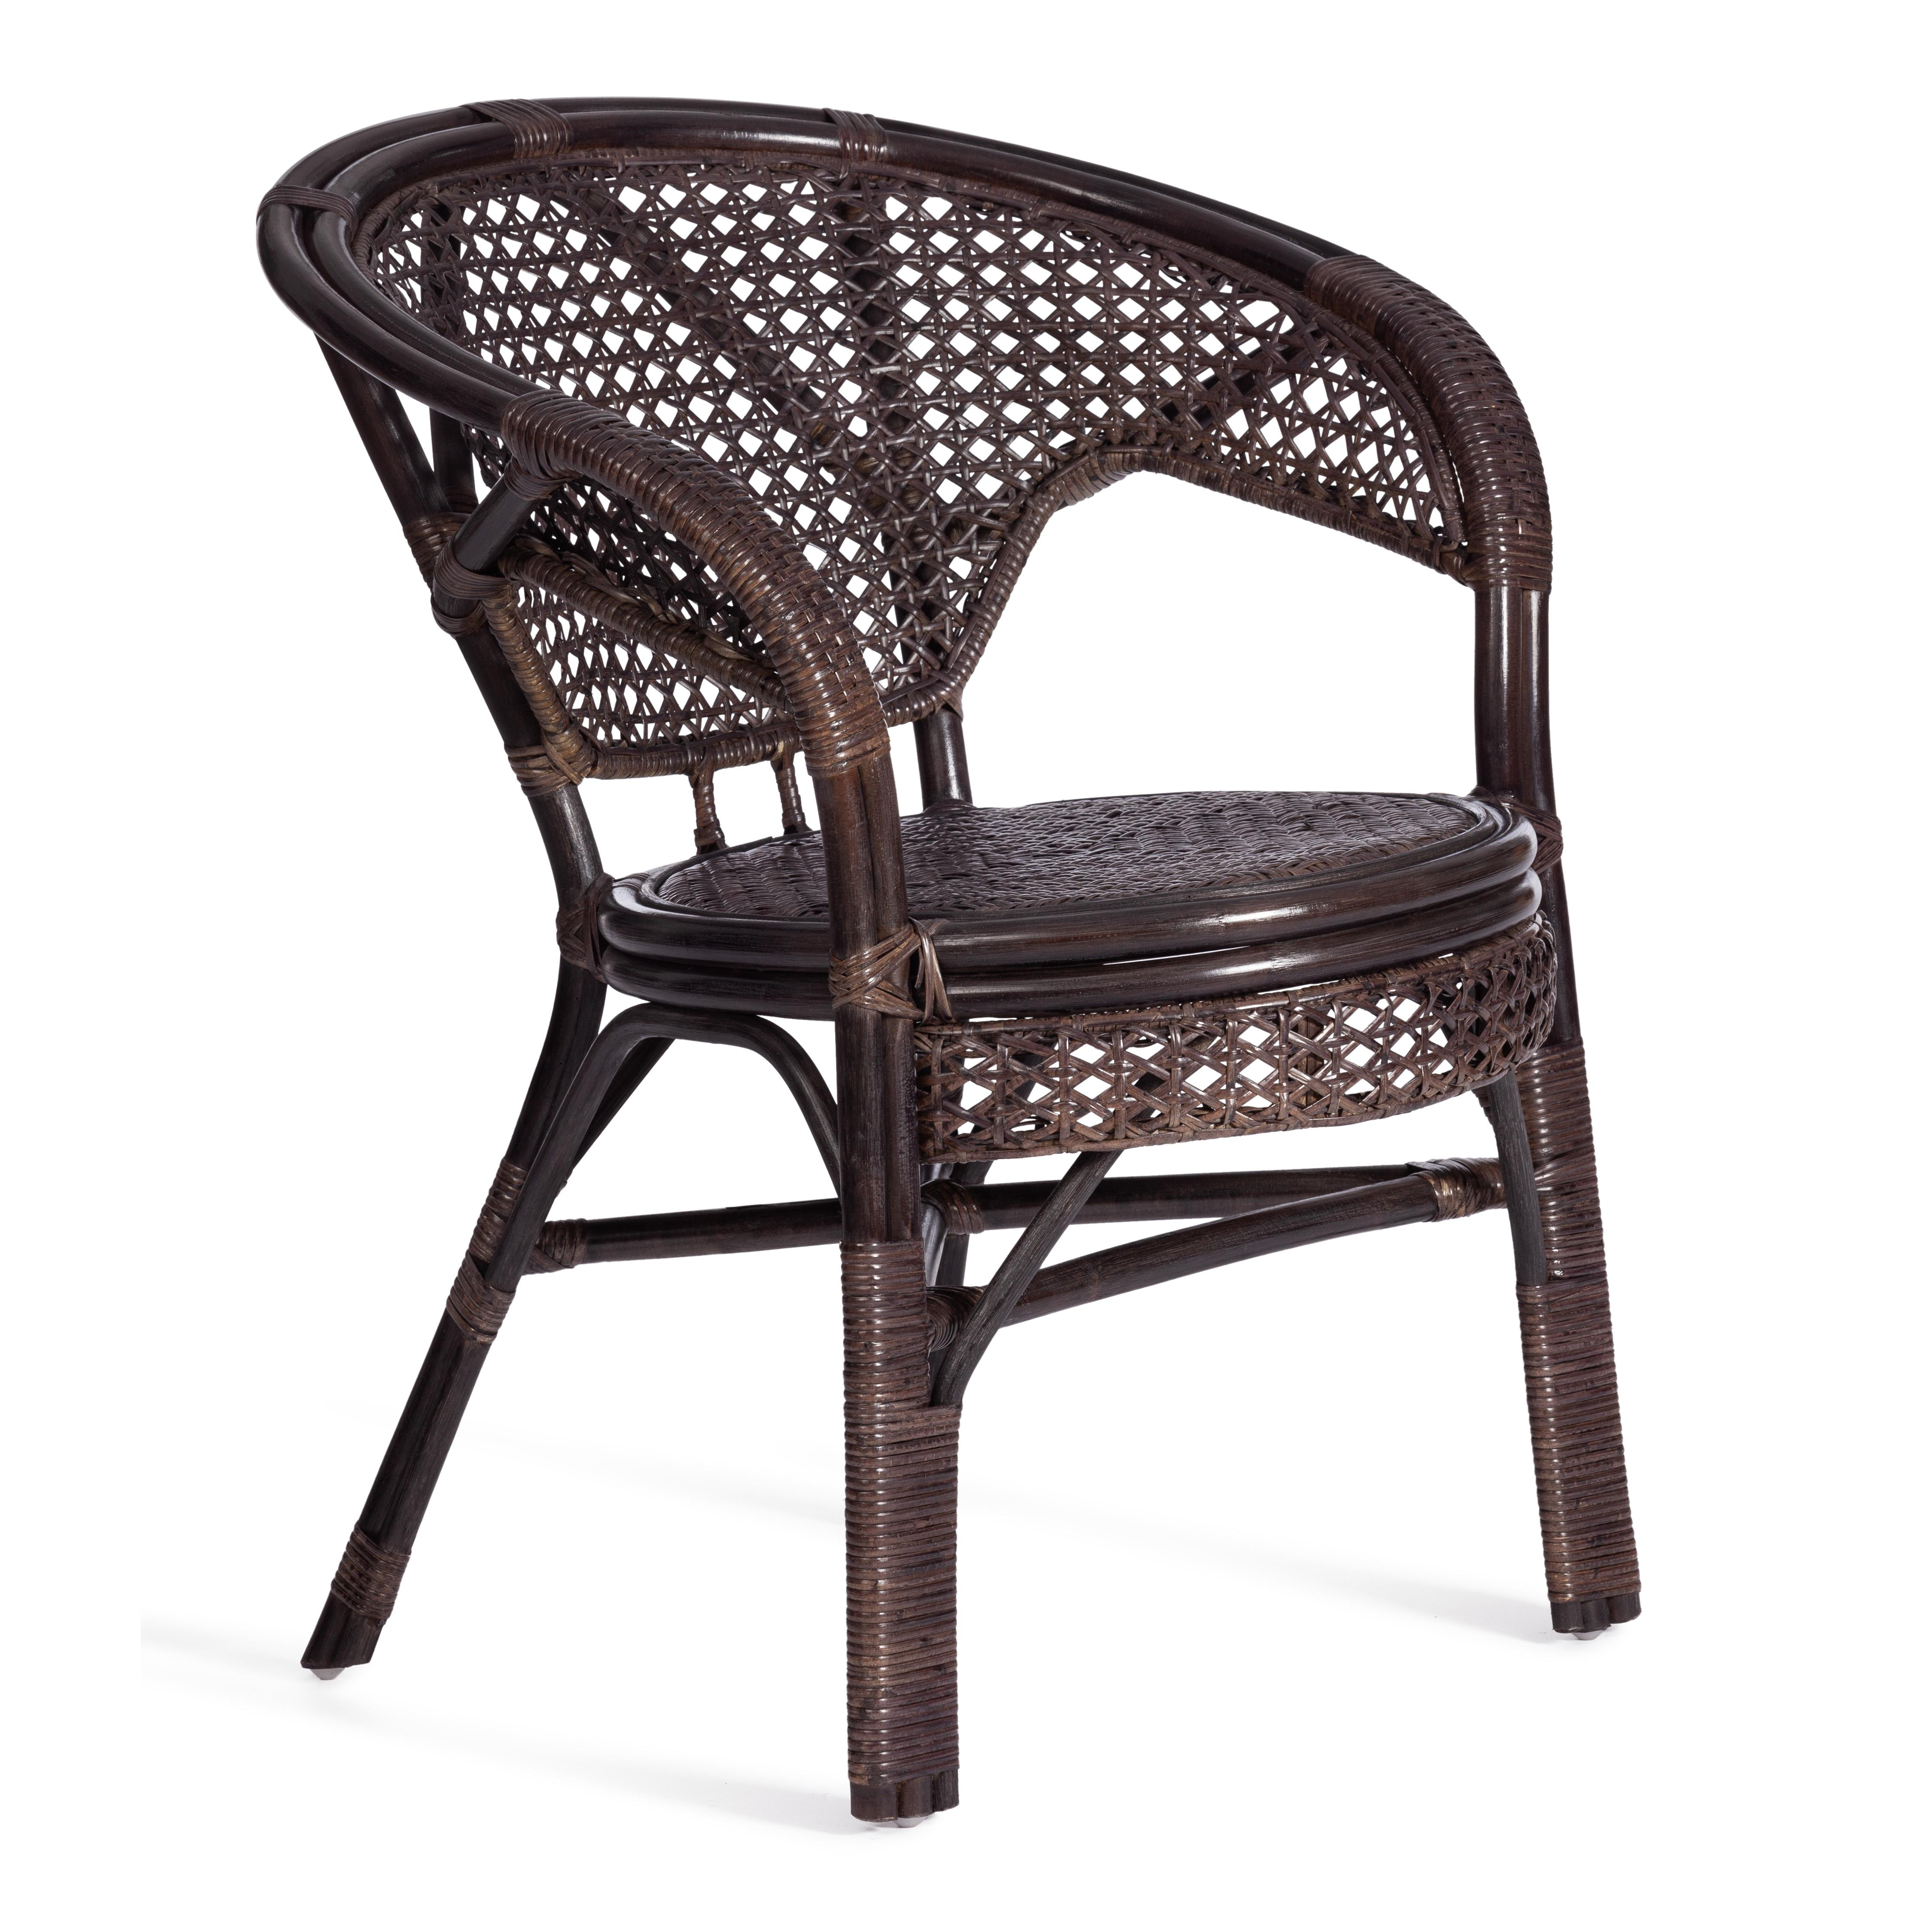 Комплект "PELANGI"  02/15 ( стол со стеклом + 4 кресла ) [без подушек] ротанг, кресло 65х65х77см, стол диаметр 64х61см, walnut (грецкий орех)